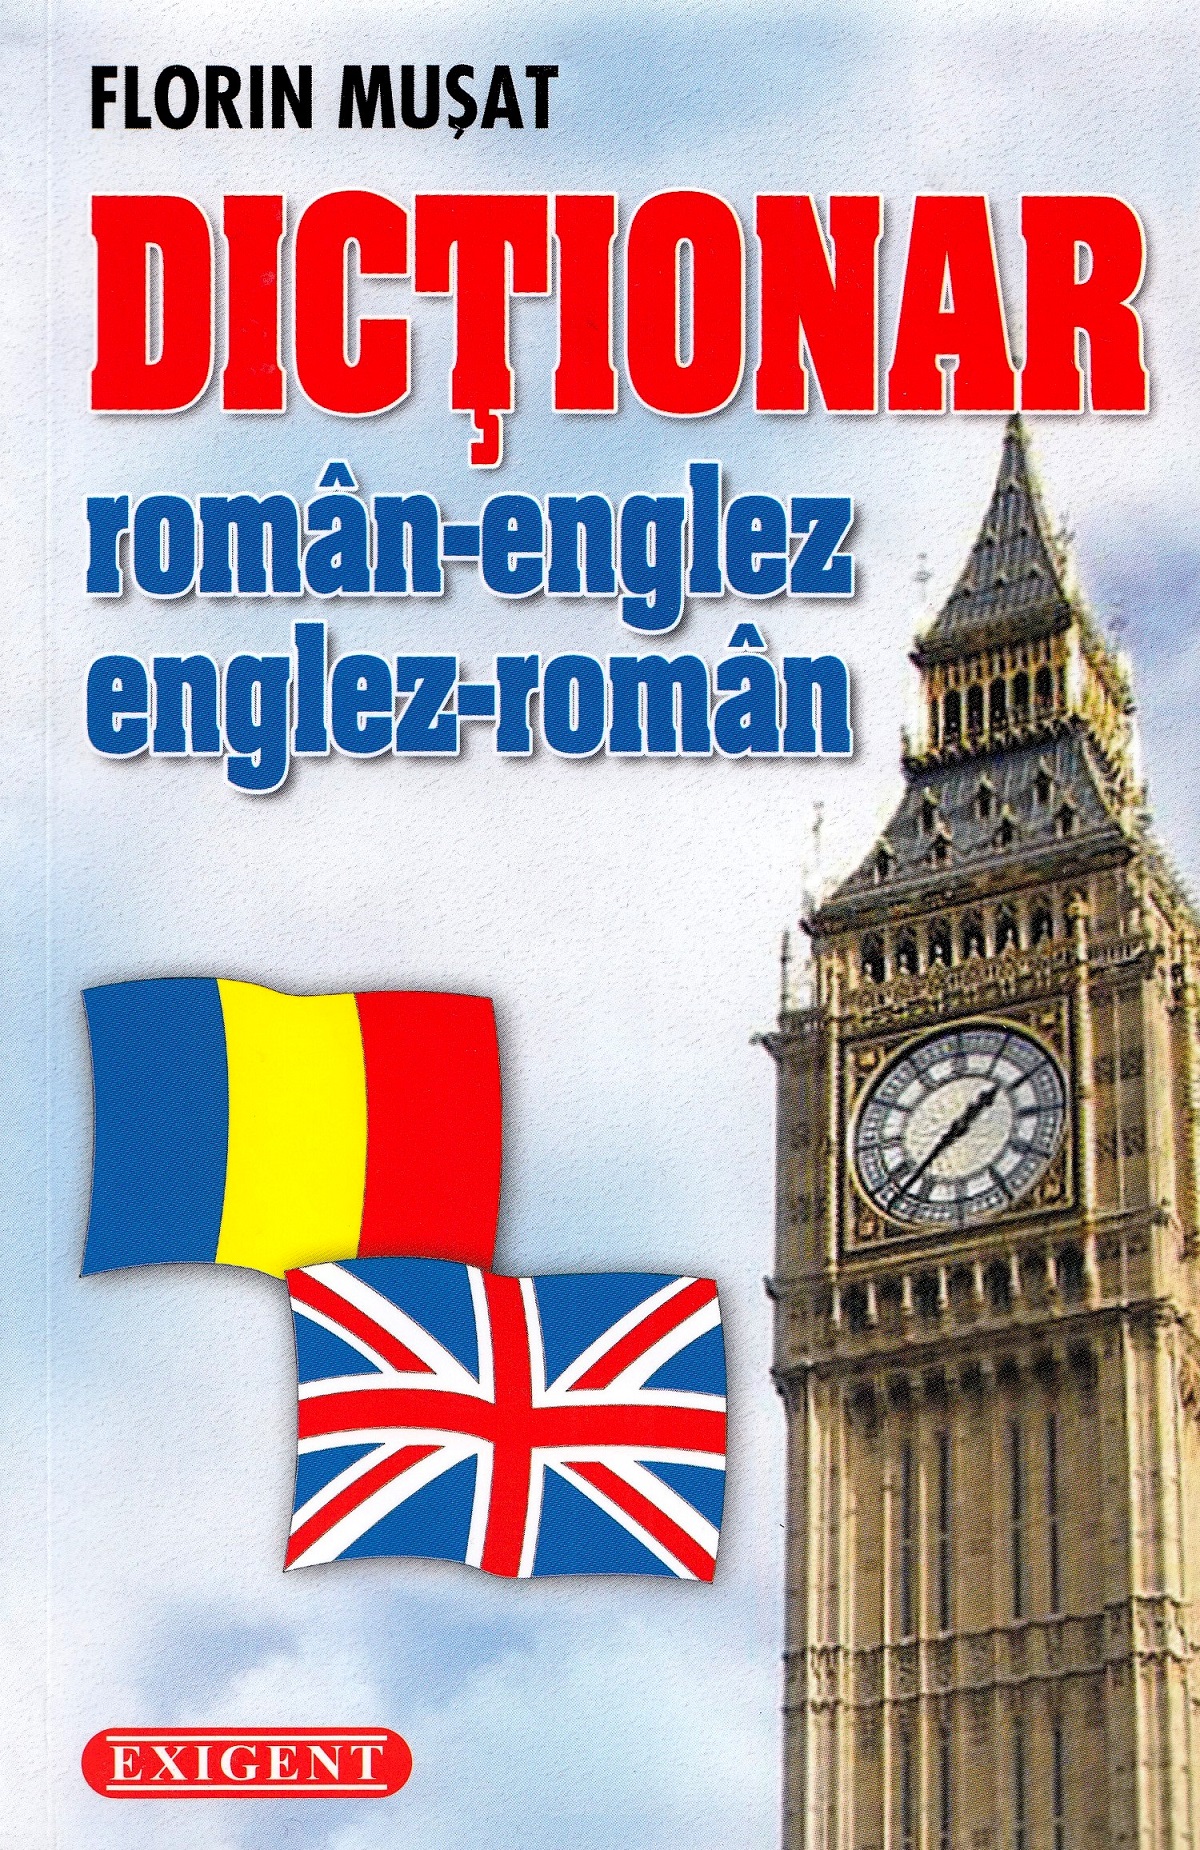 Dictionar roman-englez, englez-roman - Florin Musat